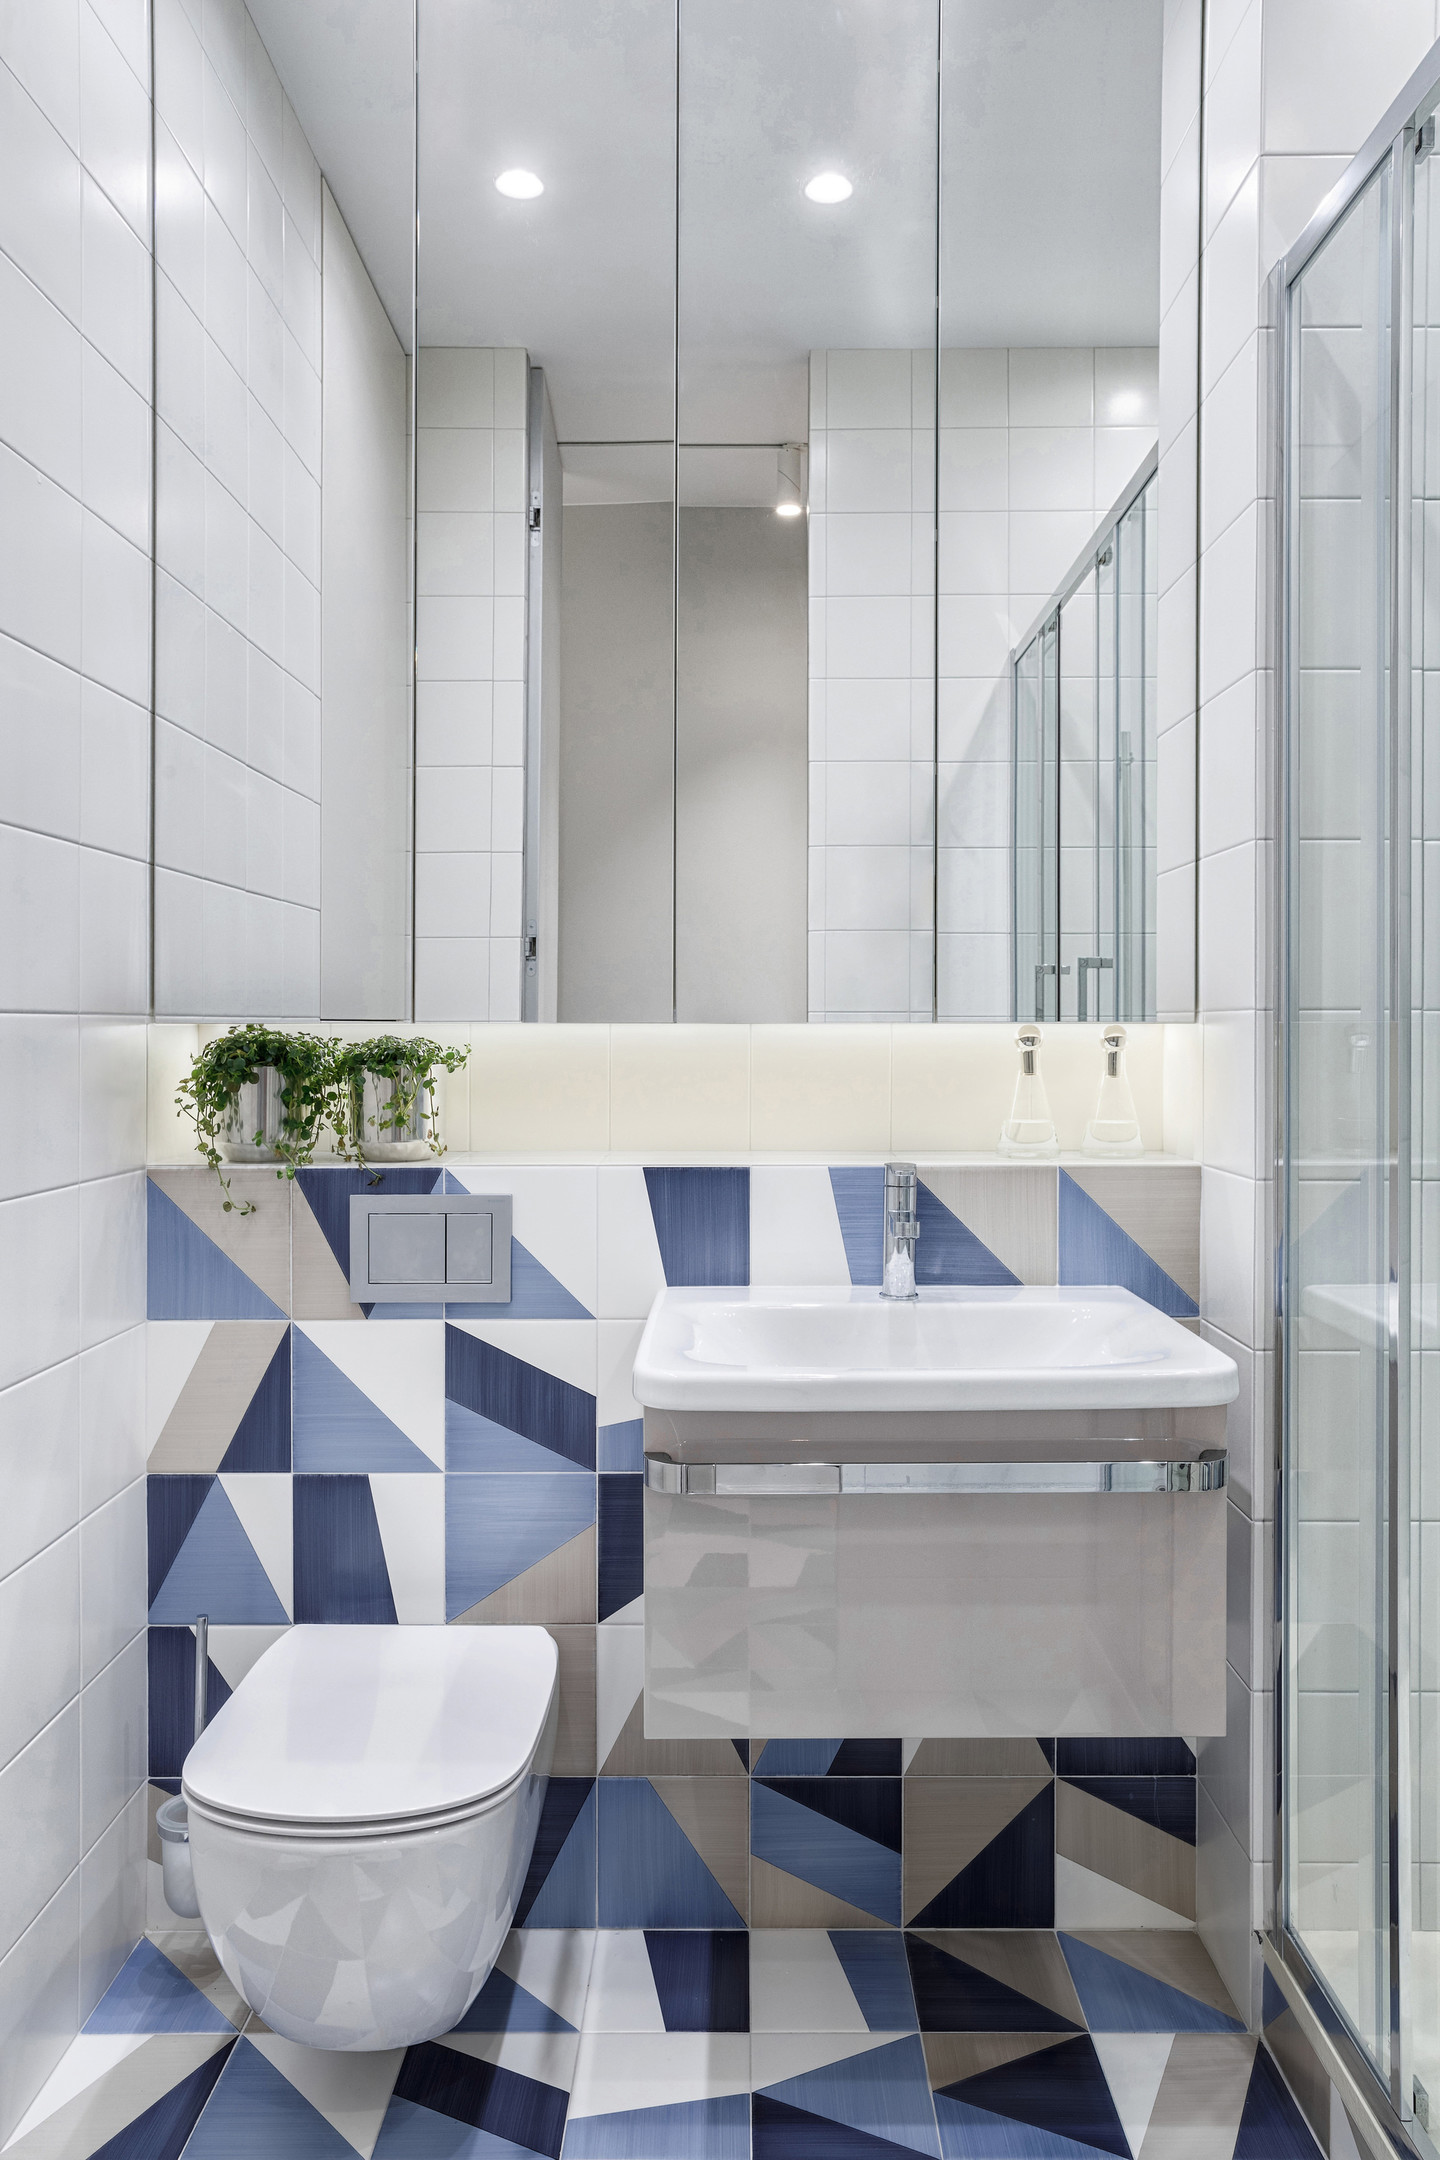 Phòng vệ sinh nhỏ gọn nhưng thoáng sáng nhờ hệ tủ lưu trữ phía trên bồn rửa tích hợp gương soi phản chiếu ánh đèn. Ngoài ra, sự kết hợp gạch mosaic trắng và gạch mosaic có màu sắc và họa tiết từ sàn đến tường cho cái nhìn sinh động hơn.